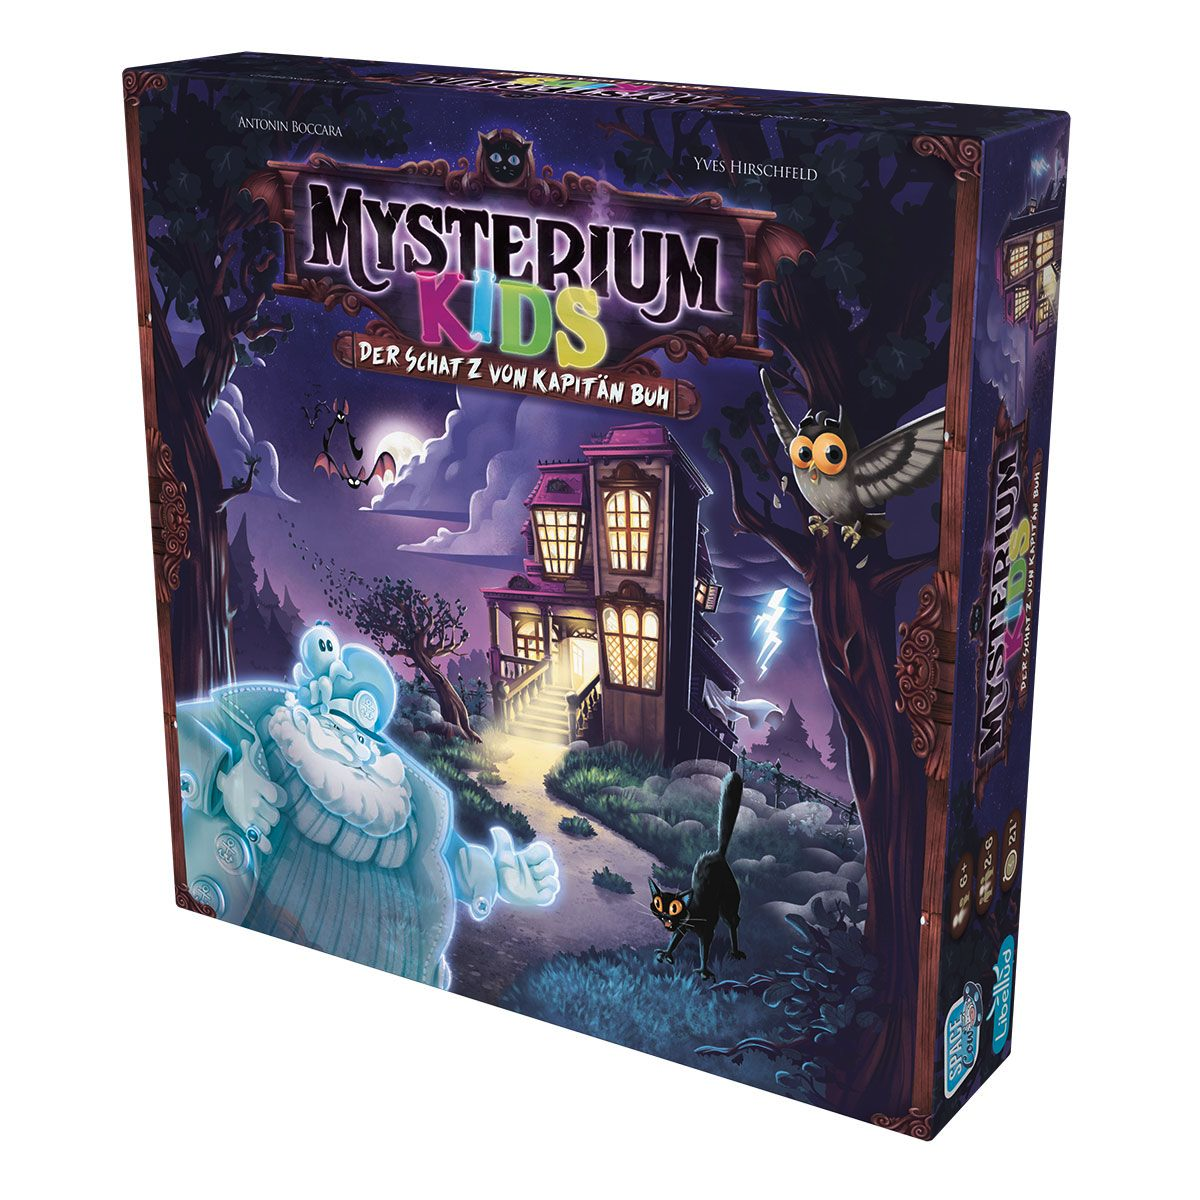 Mysterium Kids als Kinderspiel des Jahres 2023 ausgezeichnet!